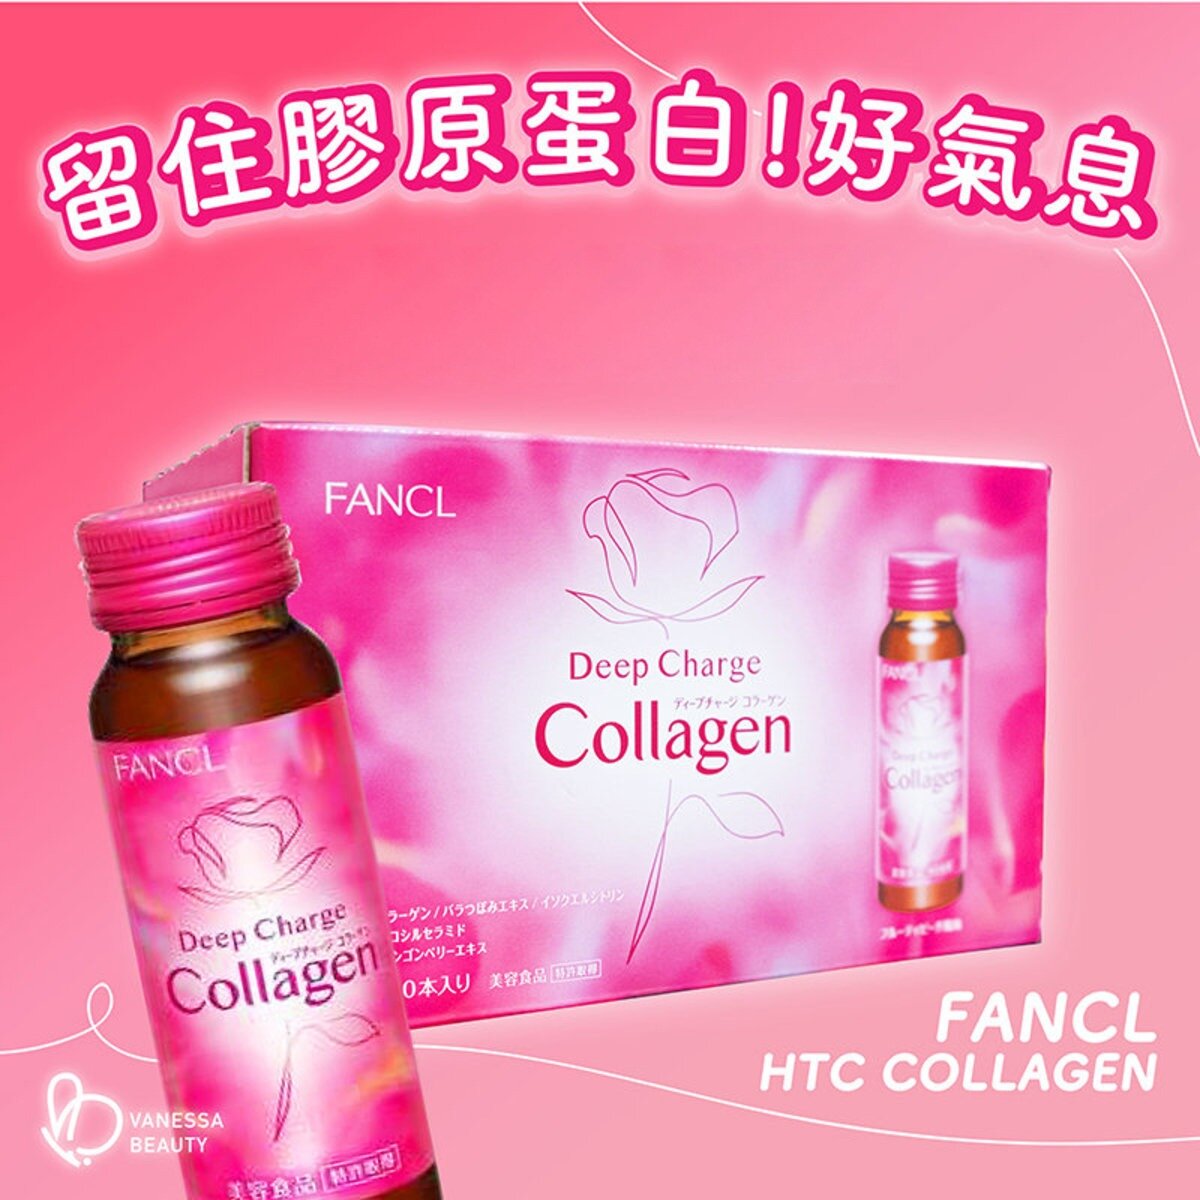 美肌膠原蛋白飲料 1盒(10瓶) HTC Deep Charge Collagen  (557058)  平行進口貨品